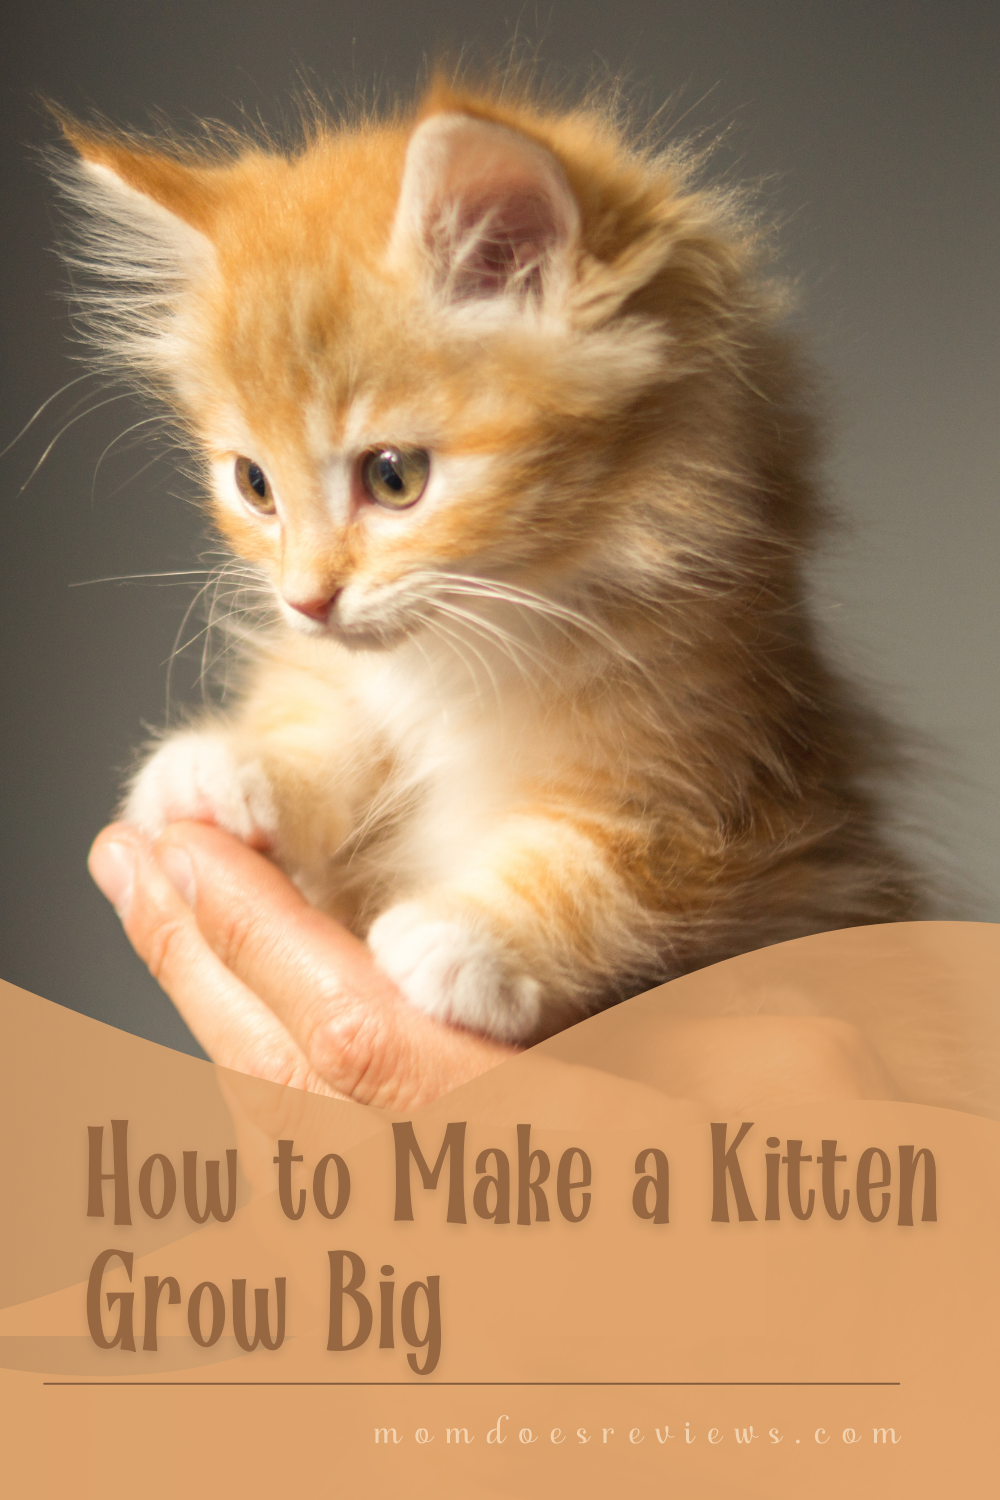 How to Make a Kitten Grow Big